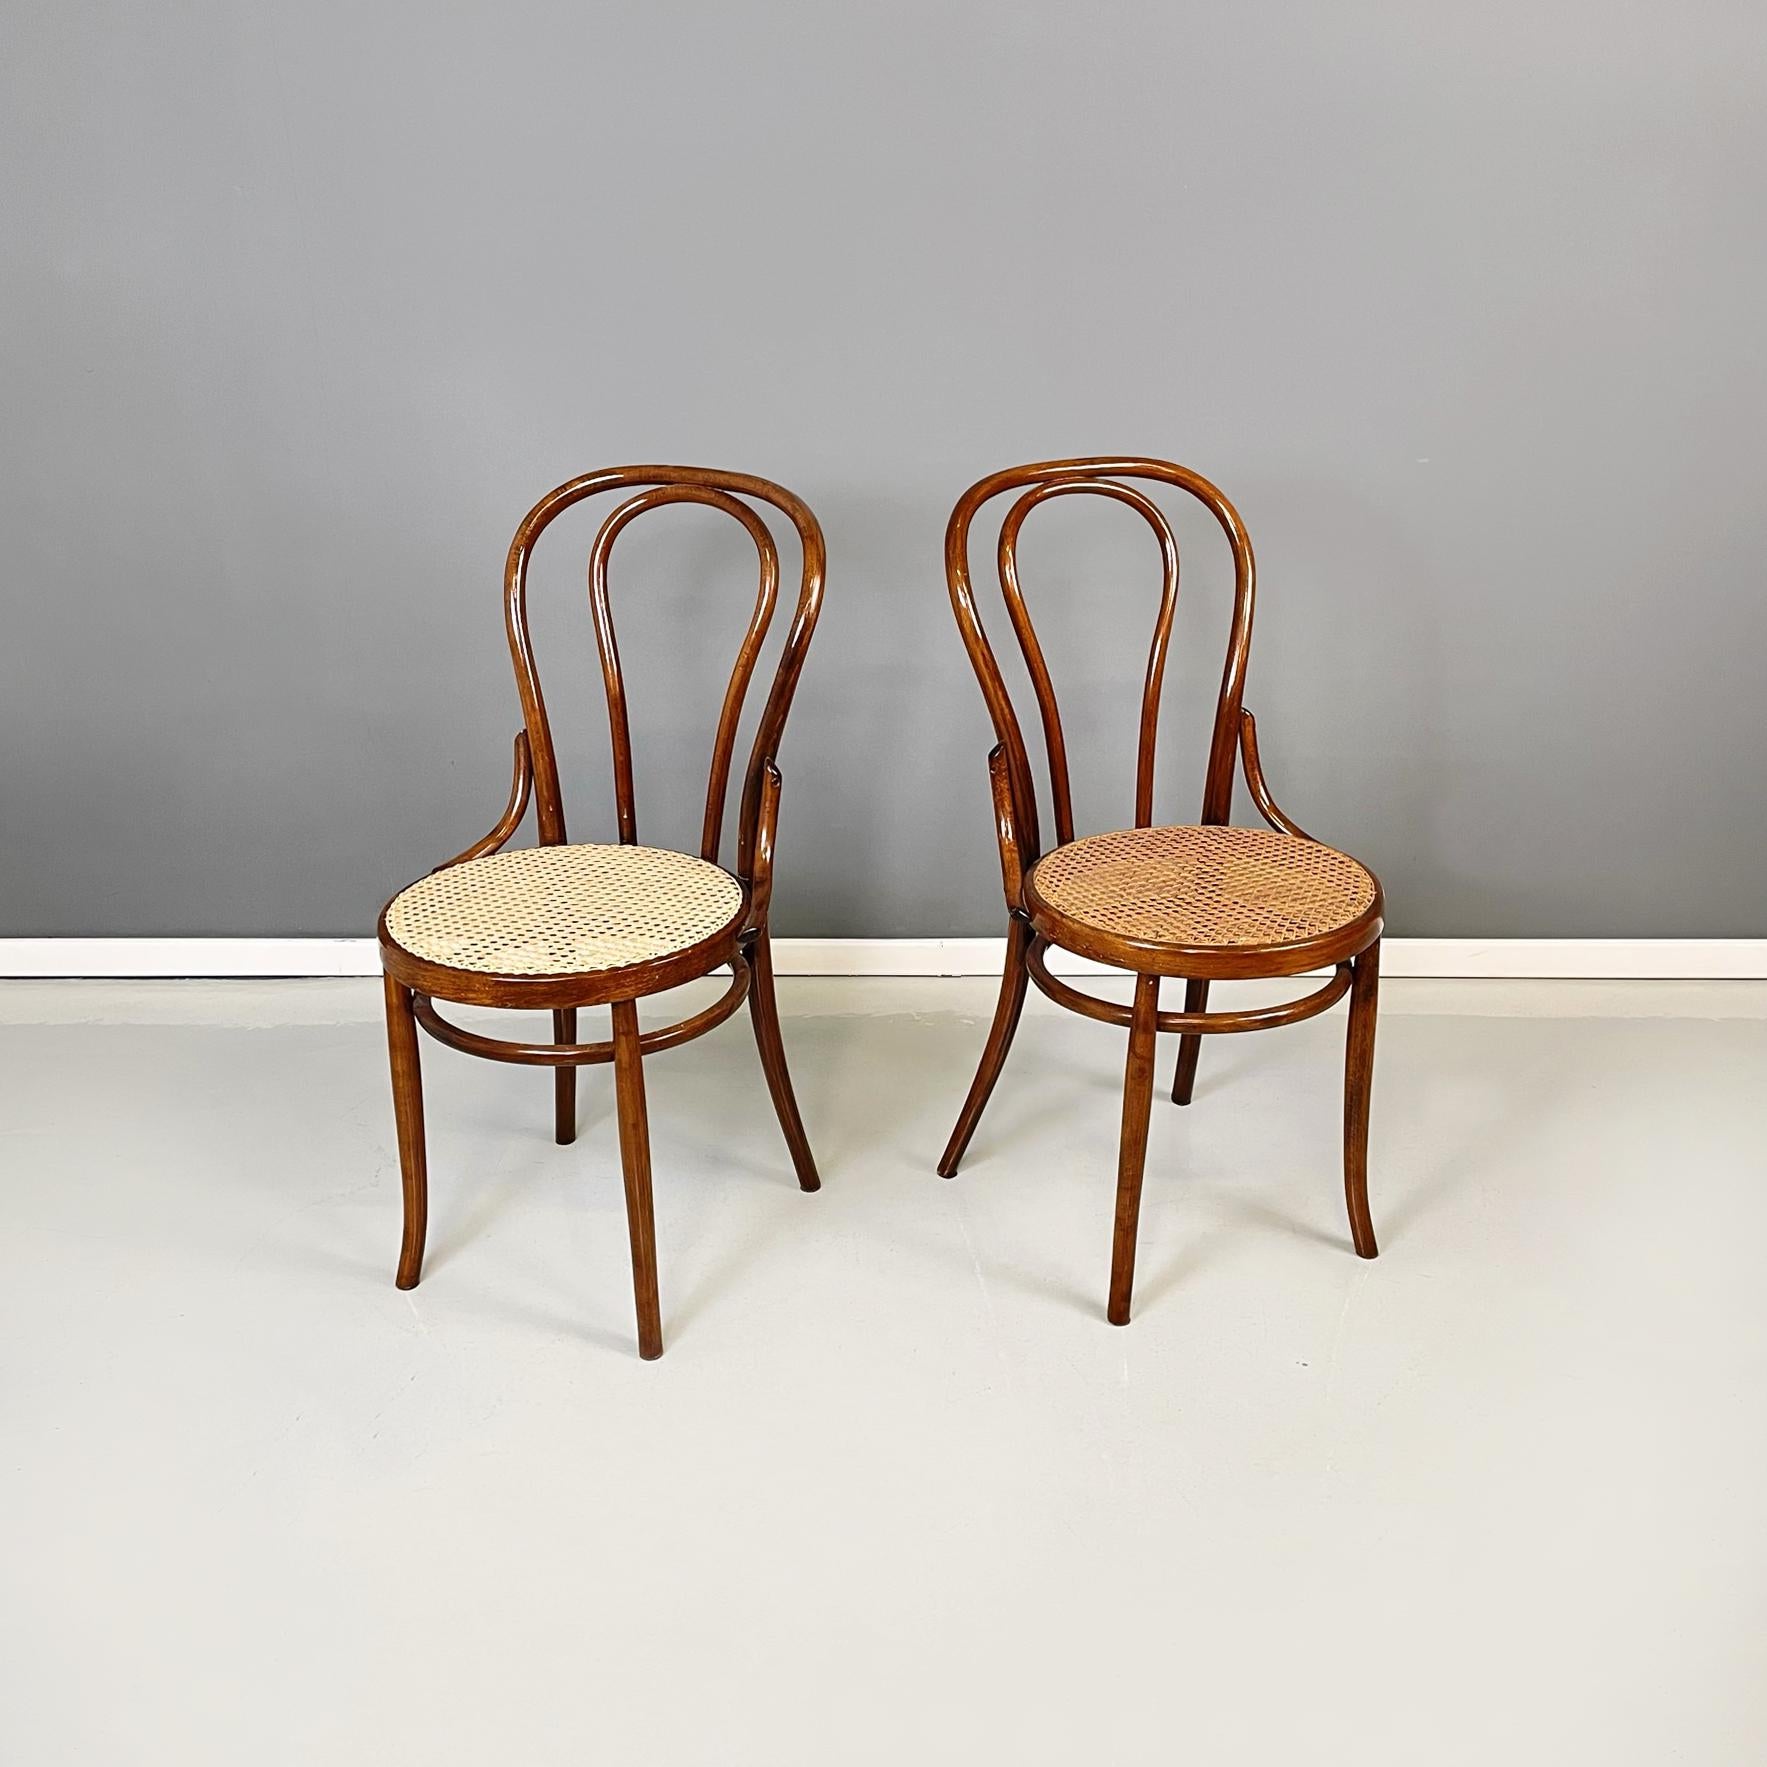 Chaises autrichiennes Style Thonet avec paille et bois par Salvatore Leone, années 1900
Ensemble de 6 chaises de style Thonet avec assise ronde en paille. La structure est en bois foncé. Le dossier est en bois courbé. Les pailles ont différentes